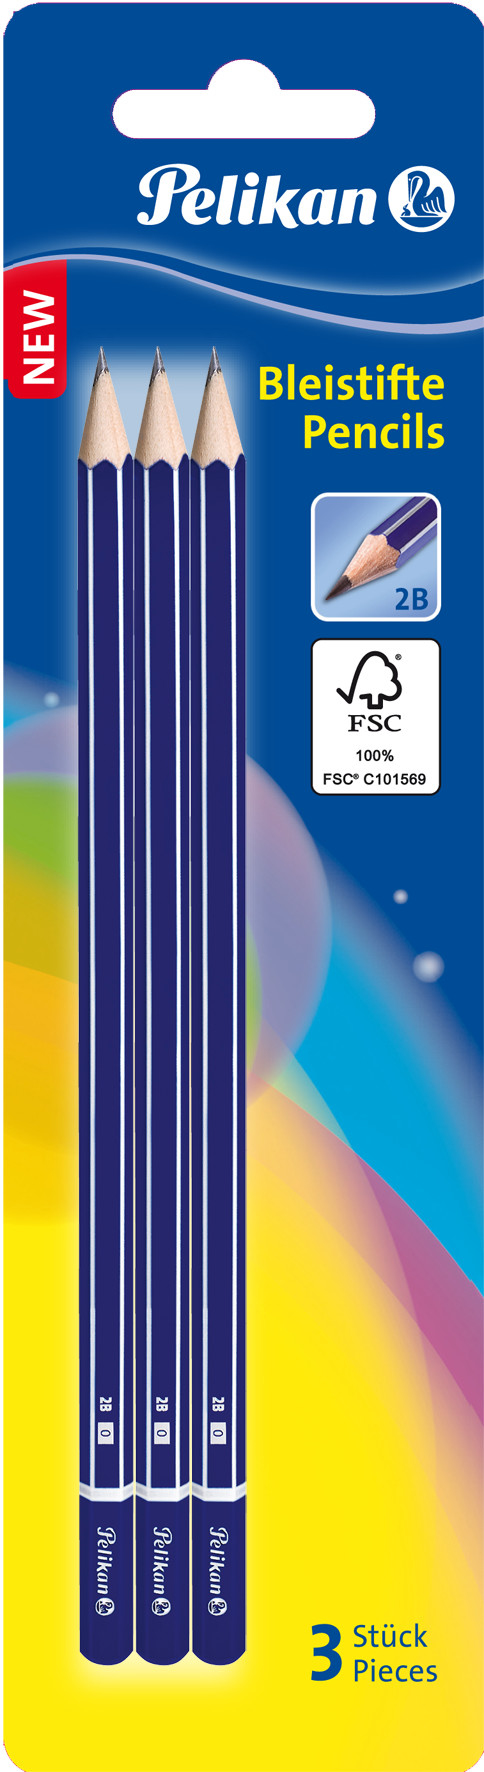 Pelikan 978783 - 2B - Blau - Hexagonal - Deutschland - Forest Stewardship Council (FSC) - Sichtverpackung